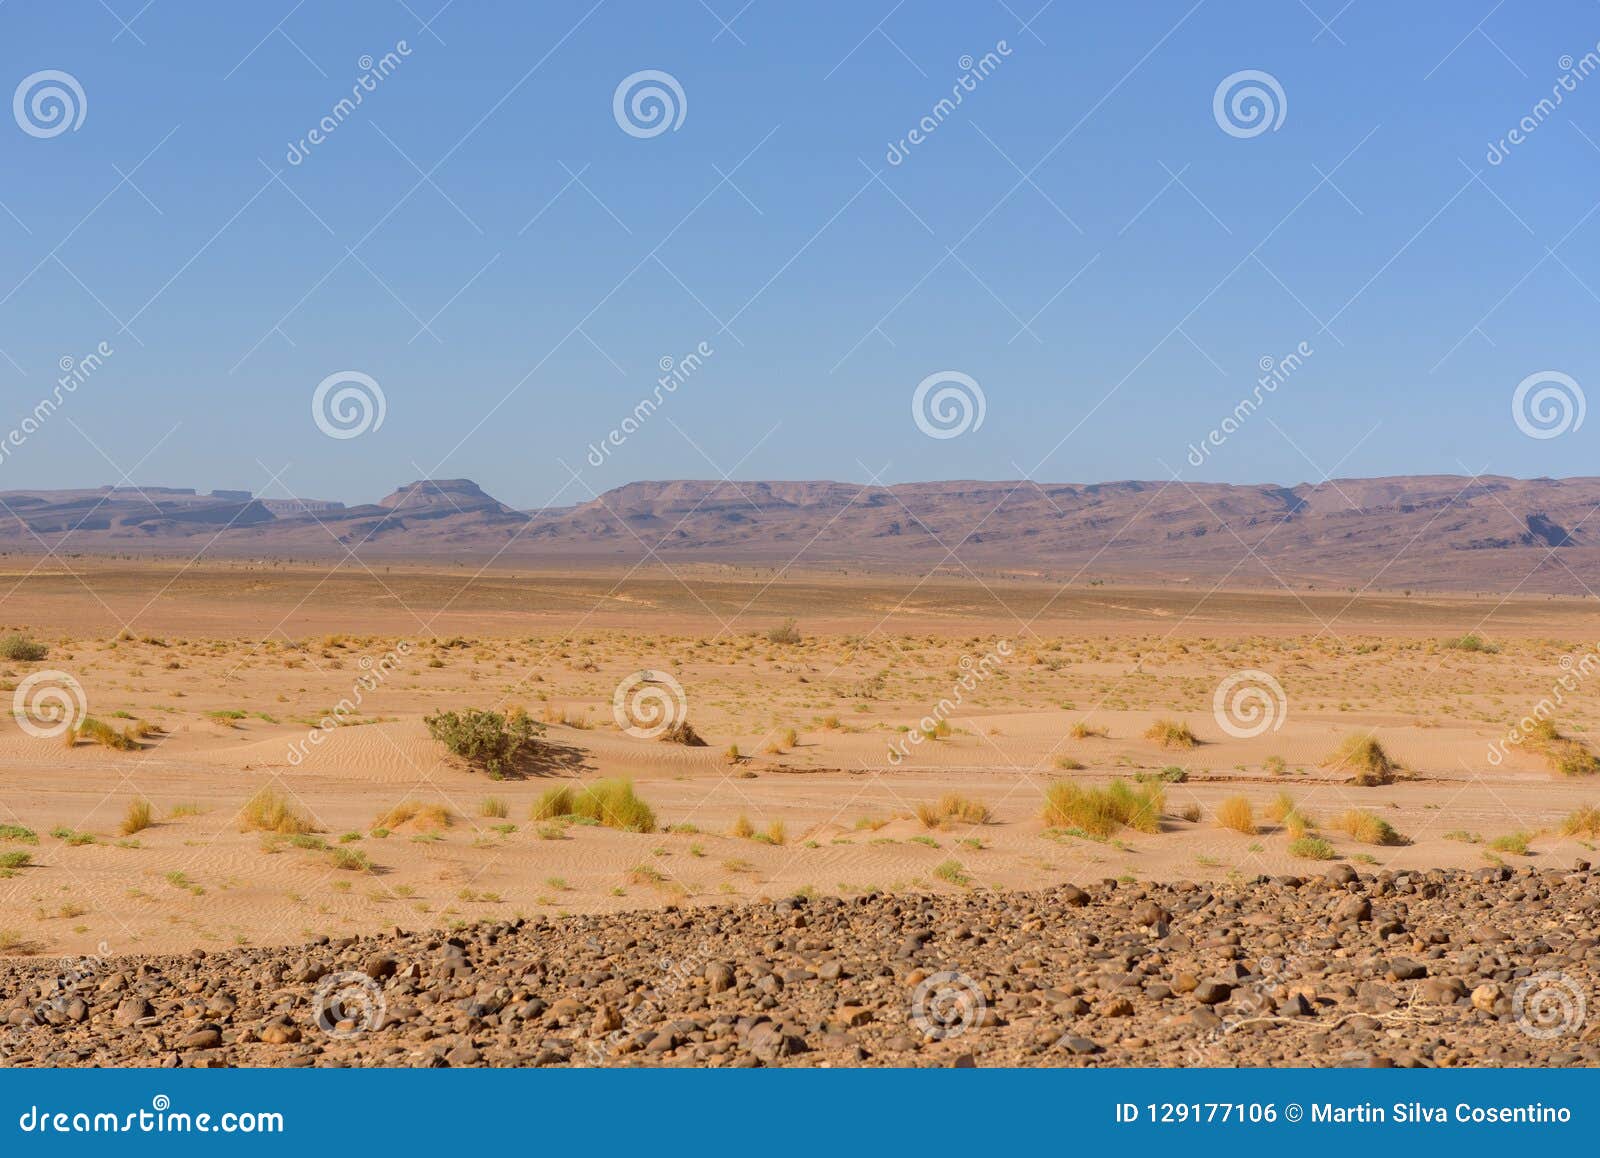 dunes in the desert of sahara, morocco.